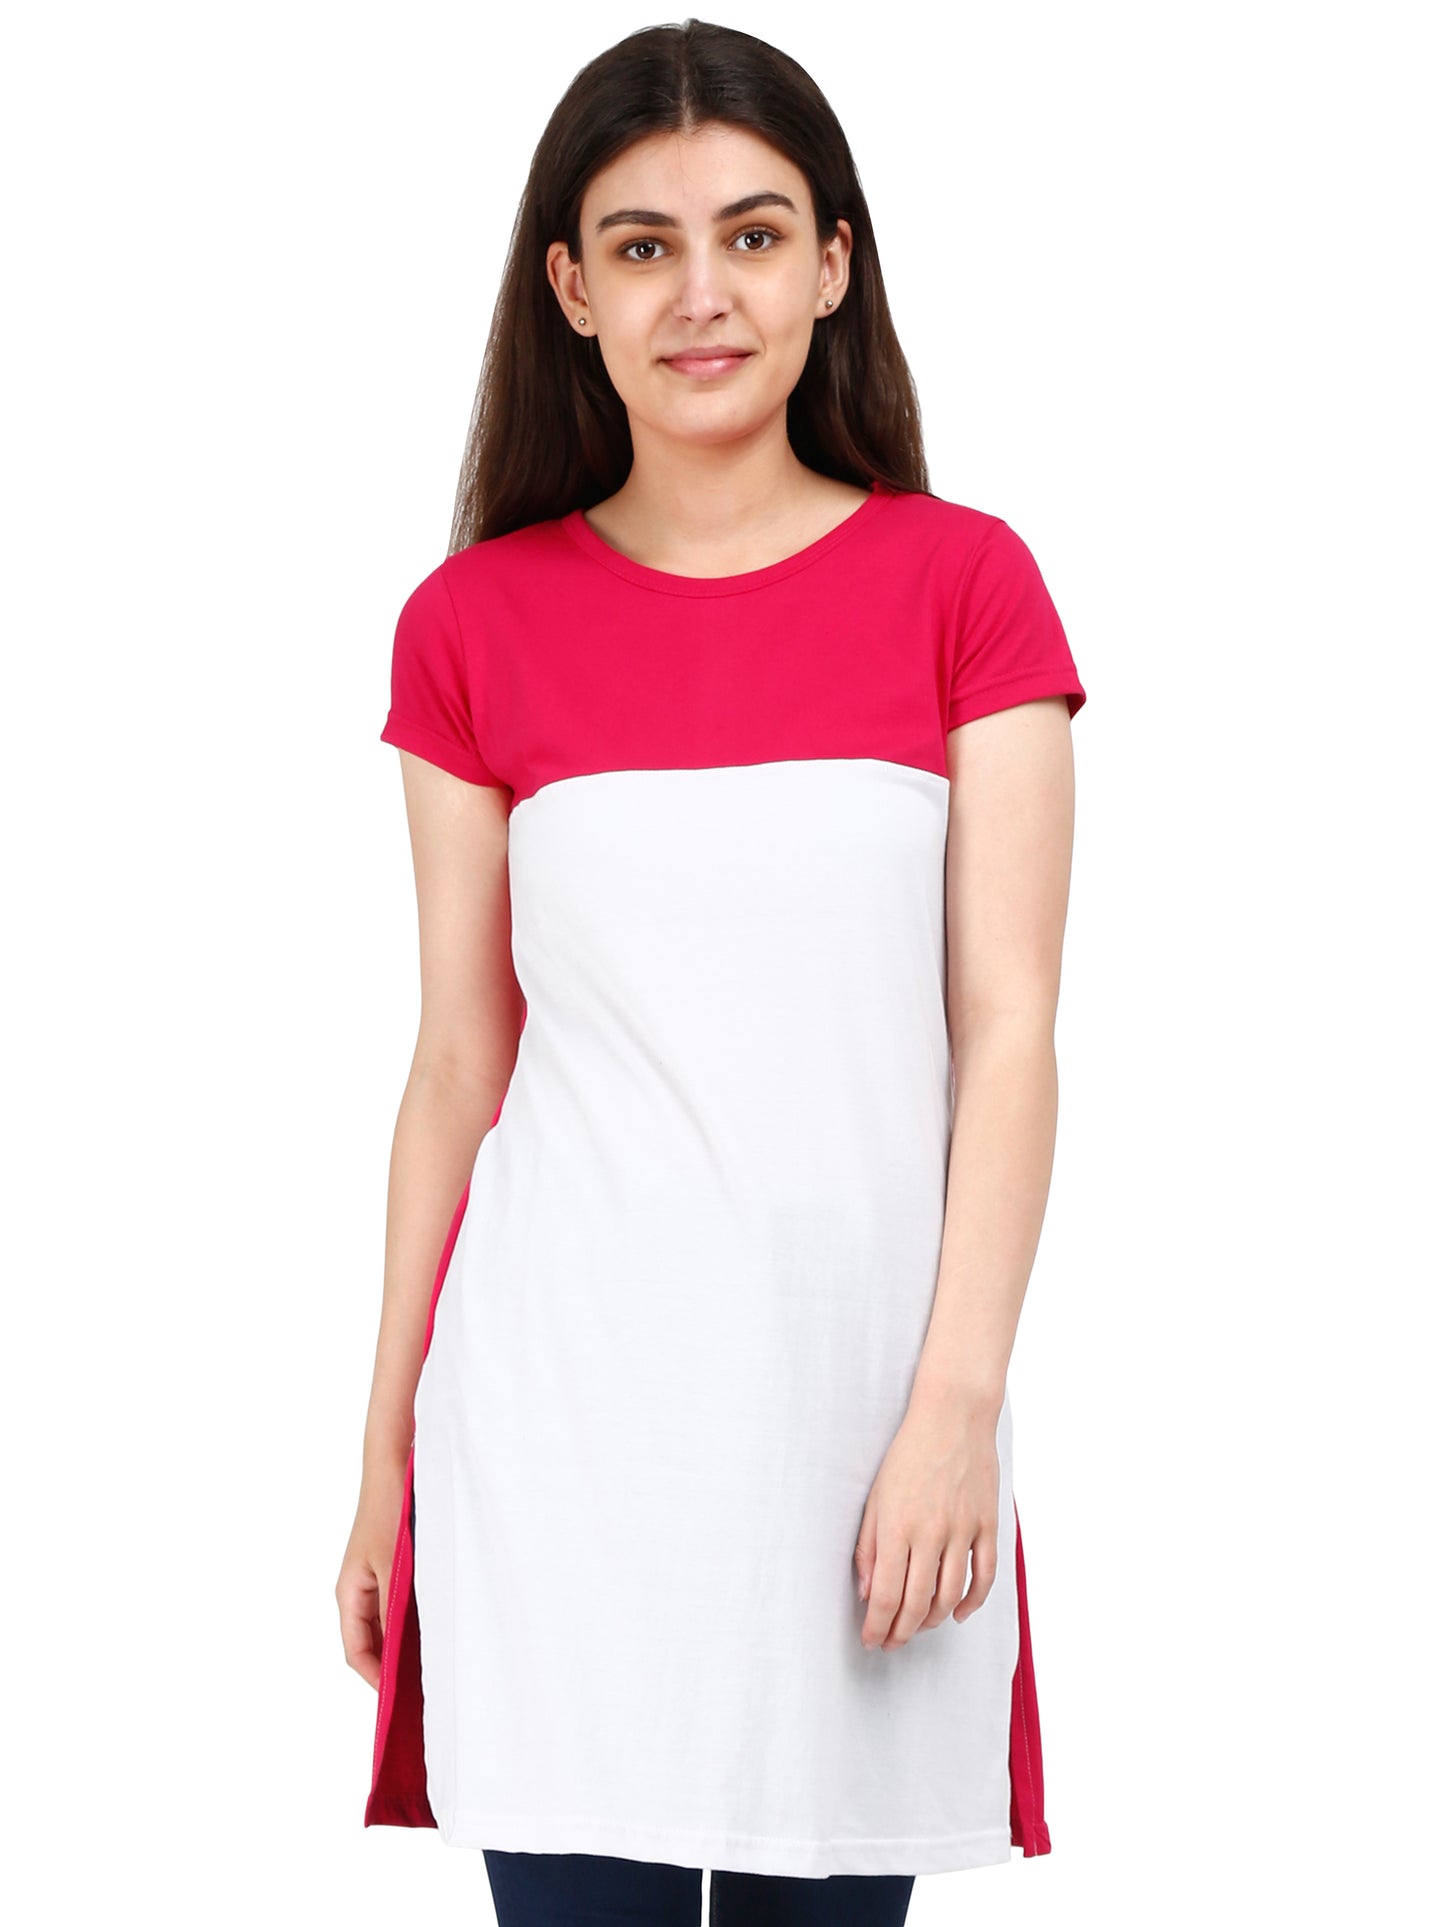 Women's Cotton Color Block Pinkwhite Color Long Top